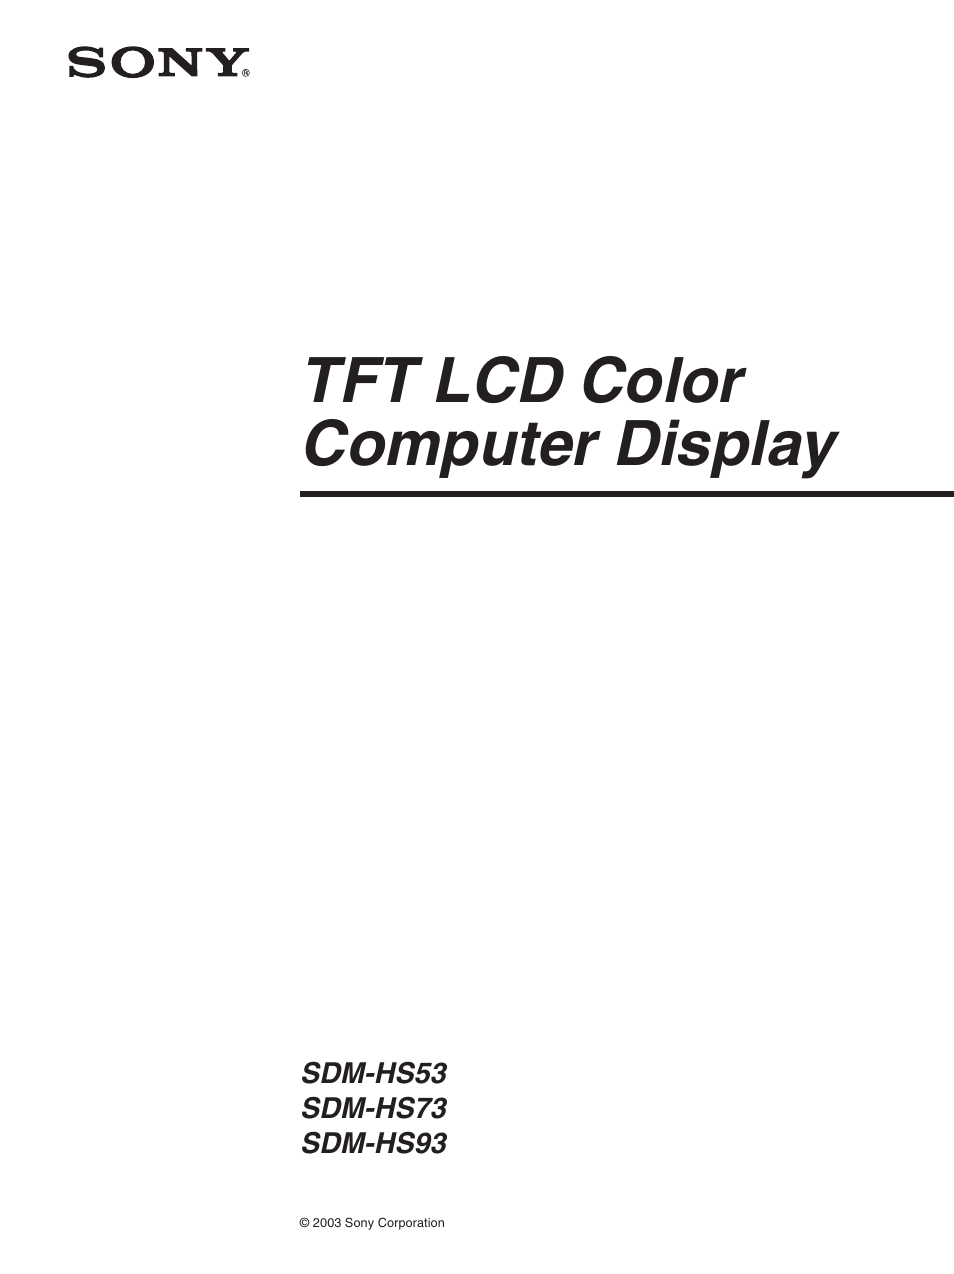 Tft lcd color computer display | Sony SDM-HS73 Manual del usuario | Página 3 / 21